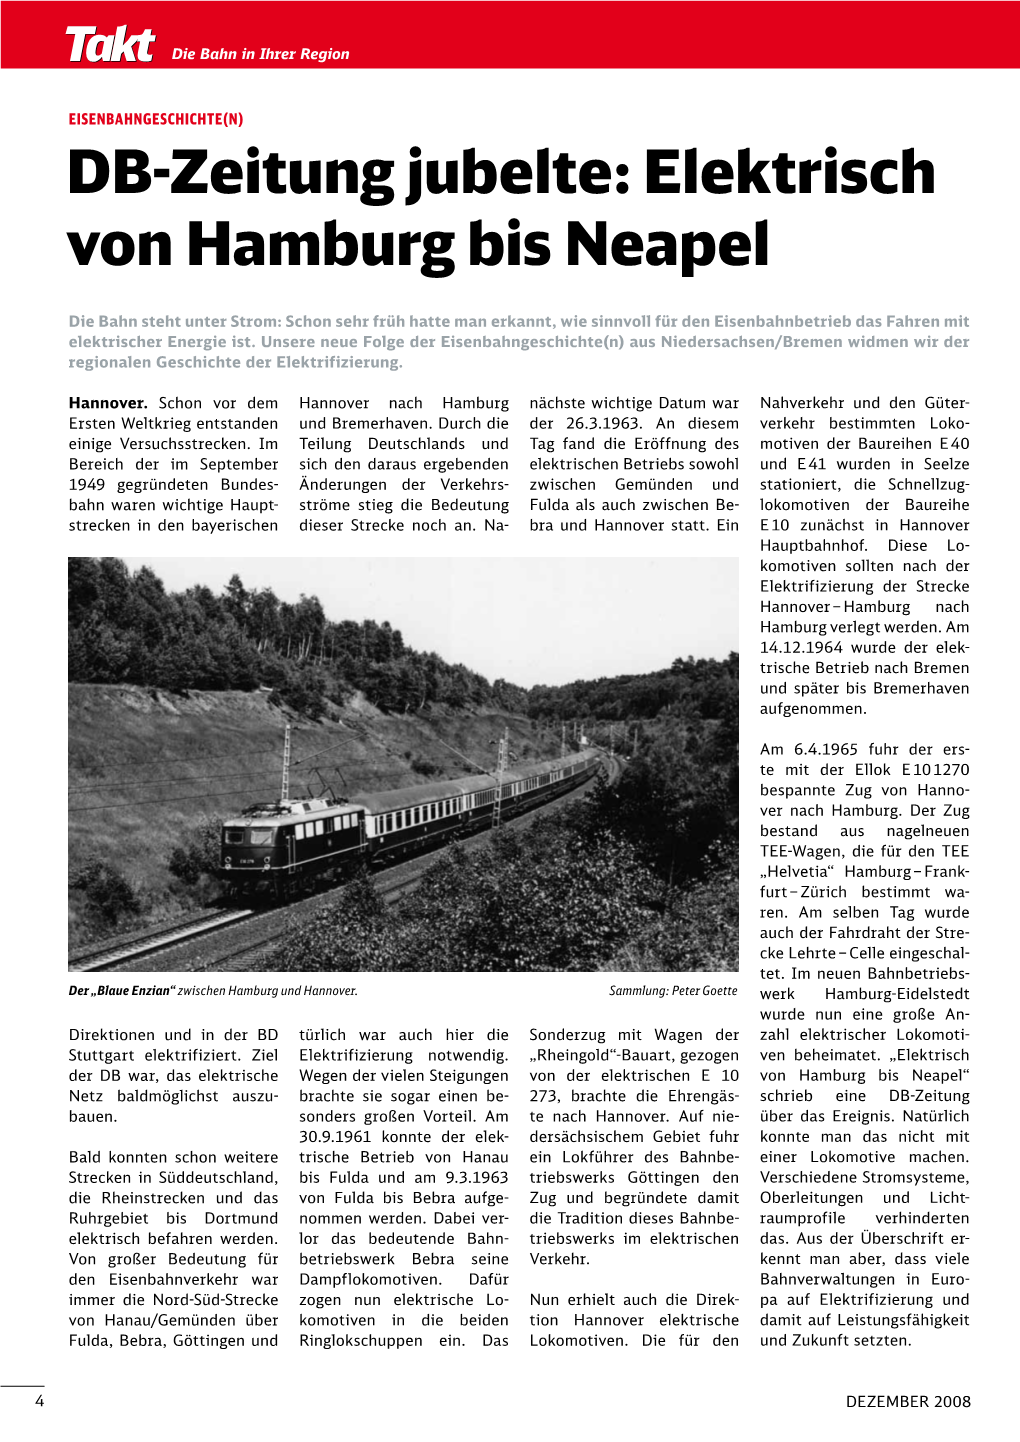 DB-Zeitung Jubelte: Elektrisch Von Hamburg Bis Neapel